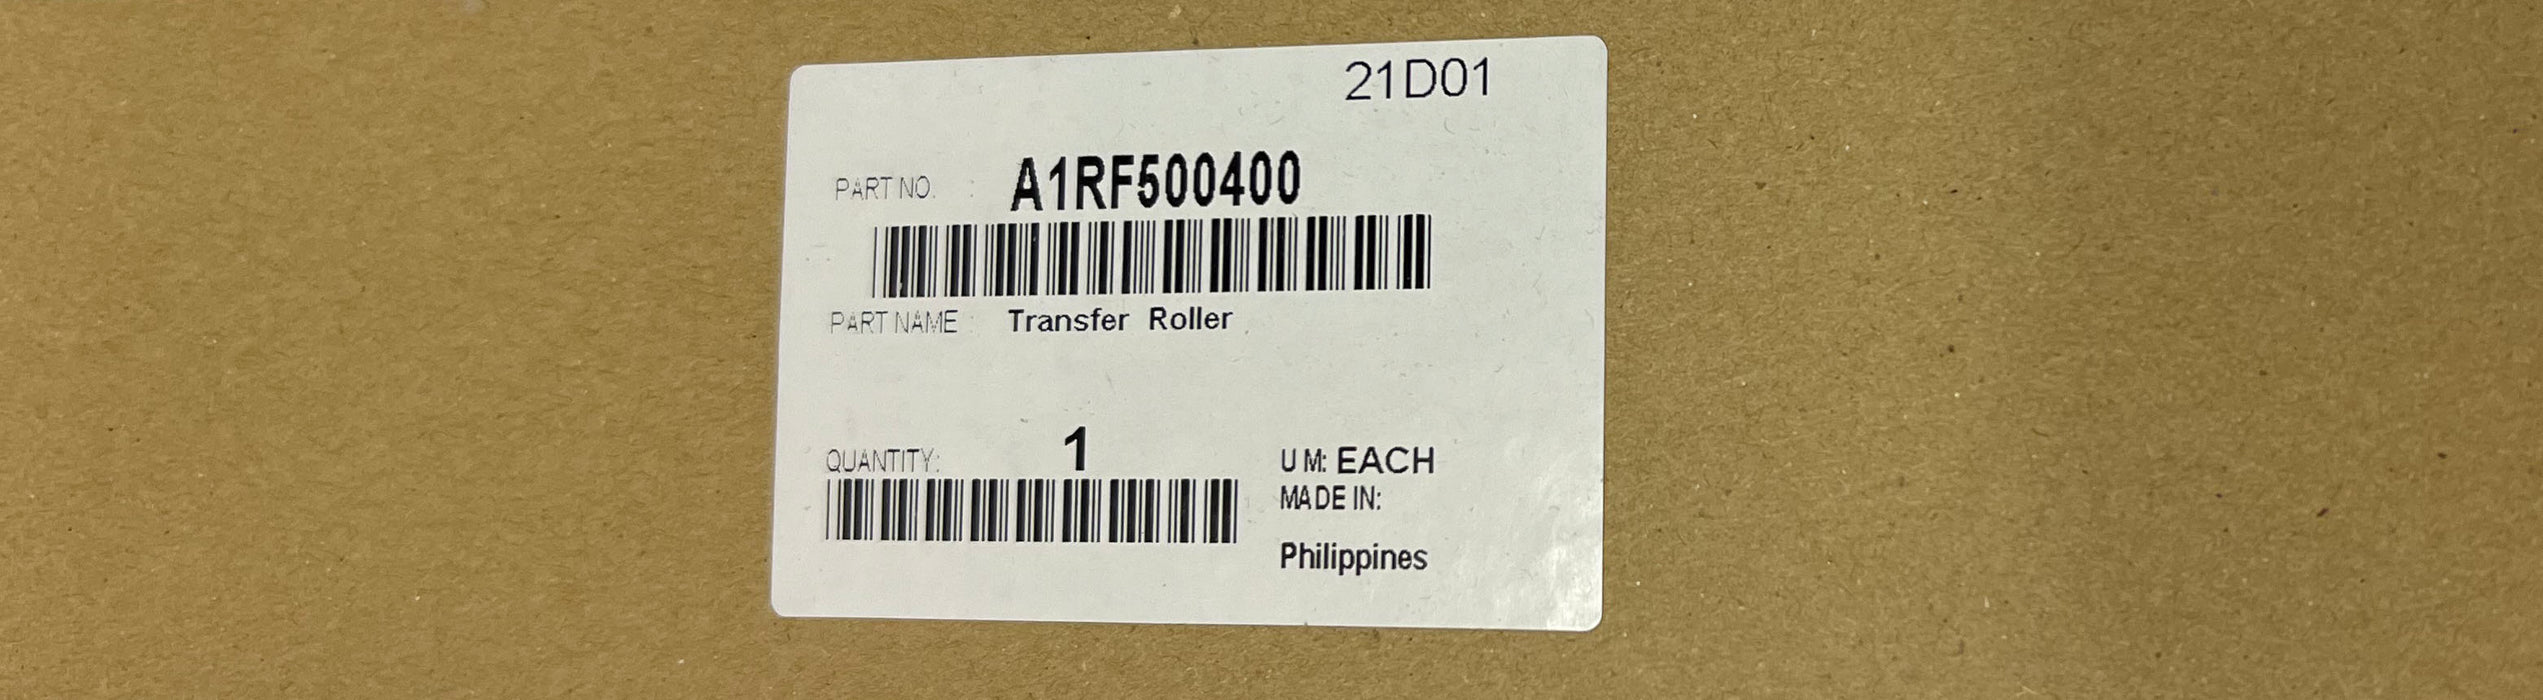 Konica Minolta Transfer Roller | A1RF500400